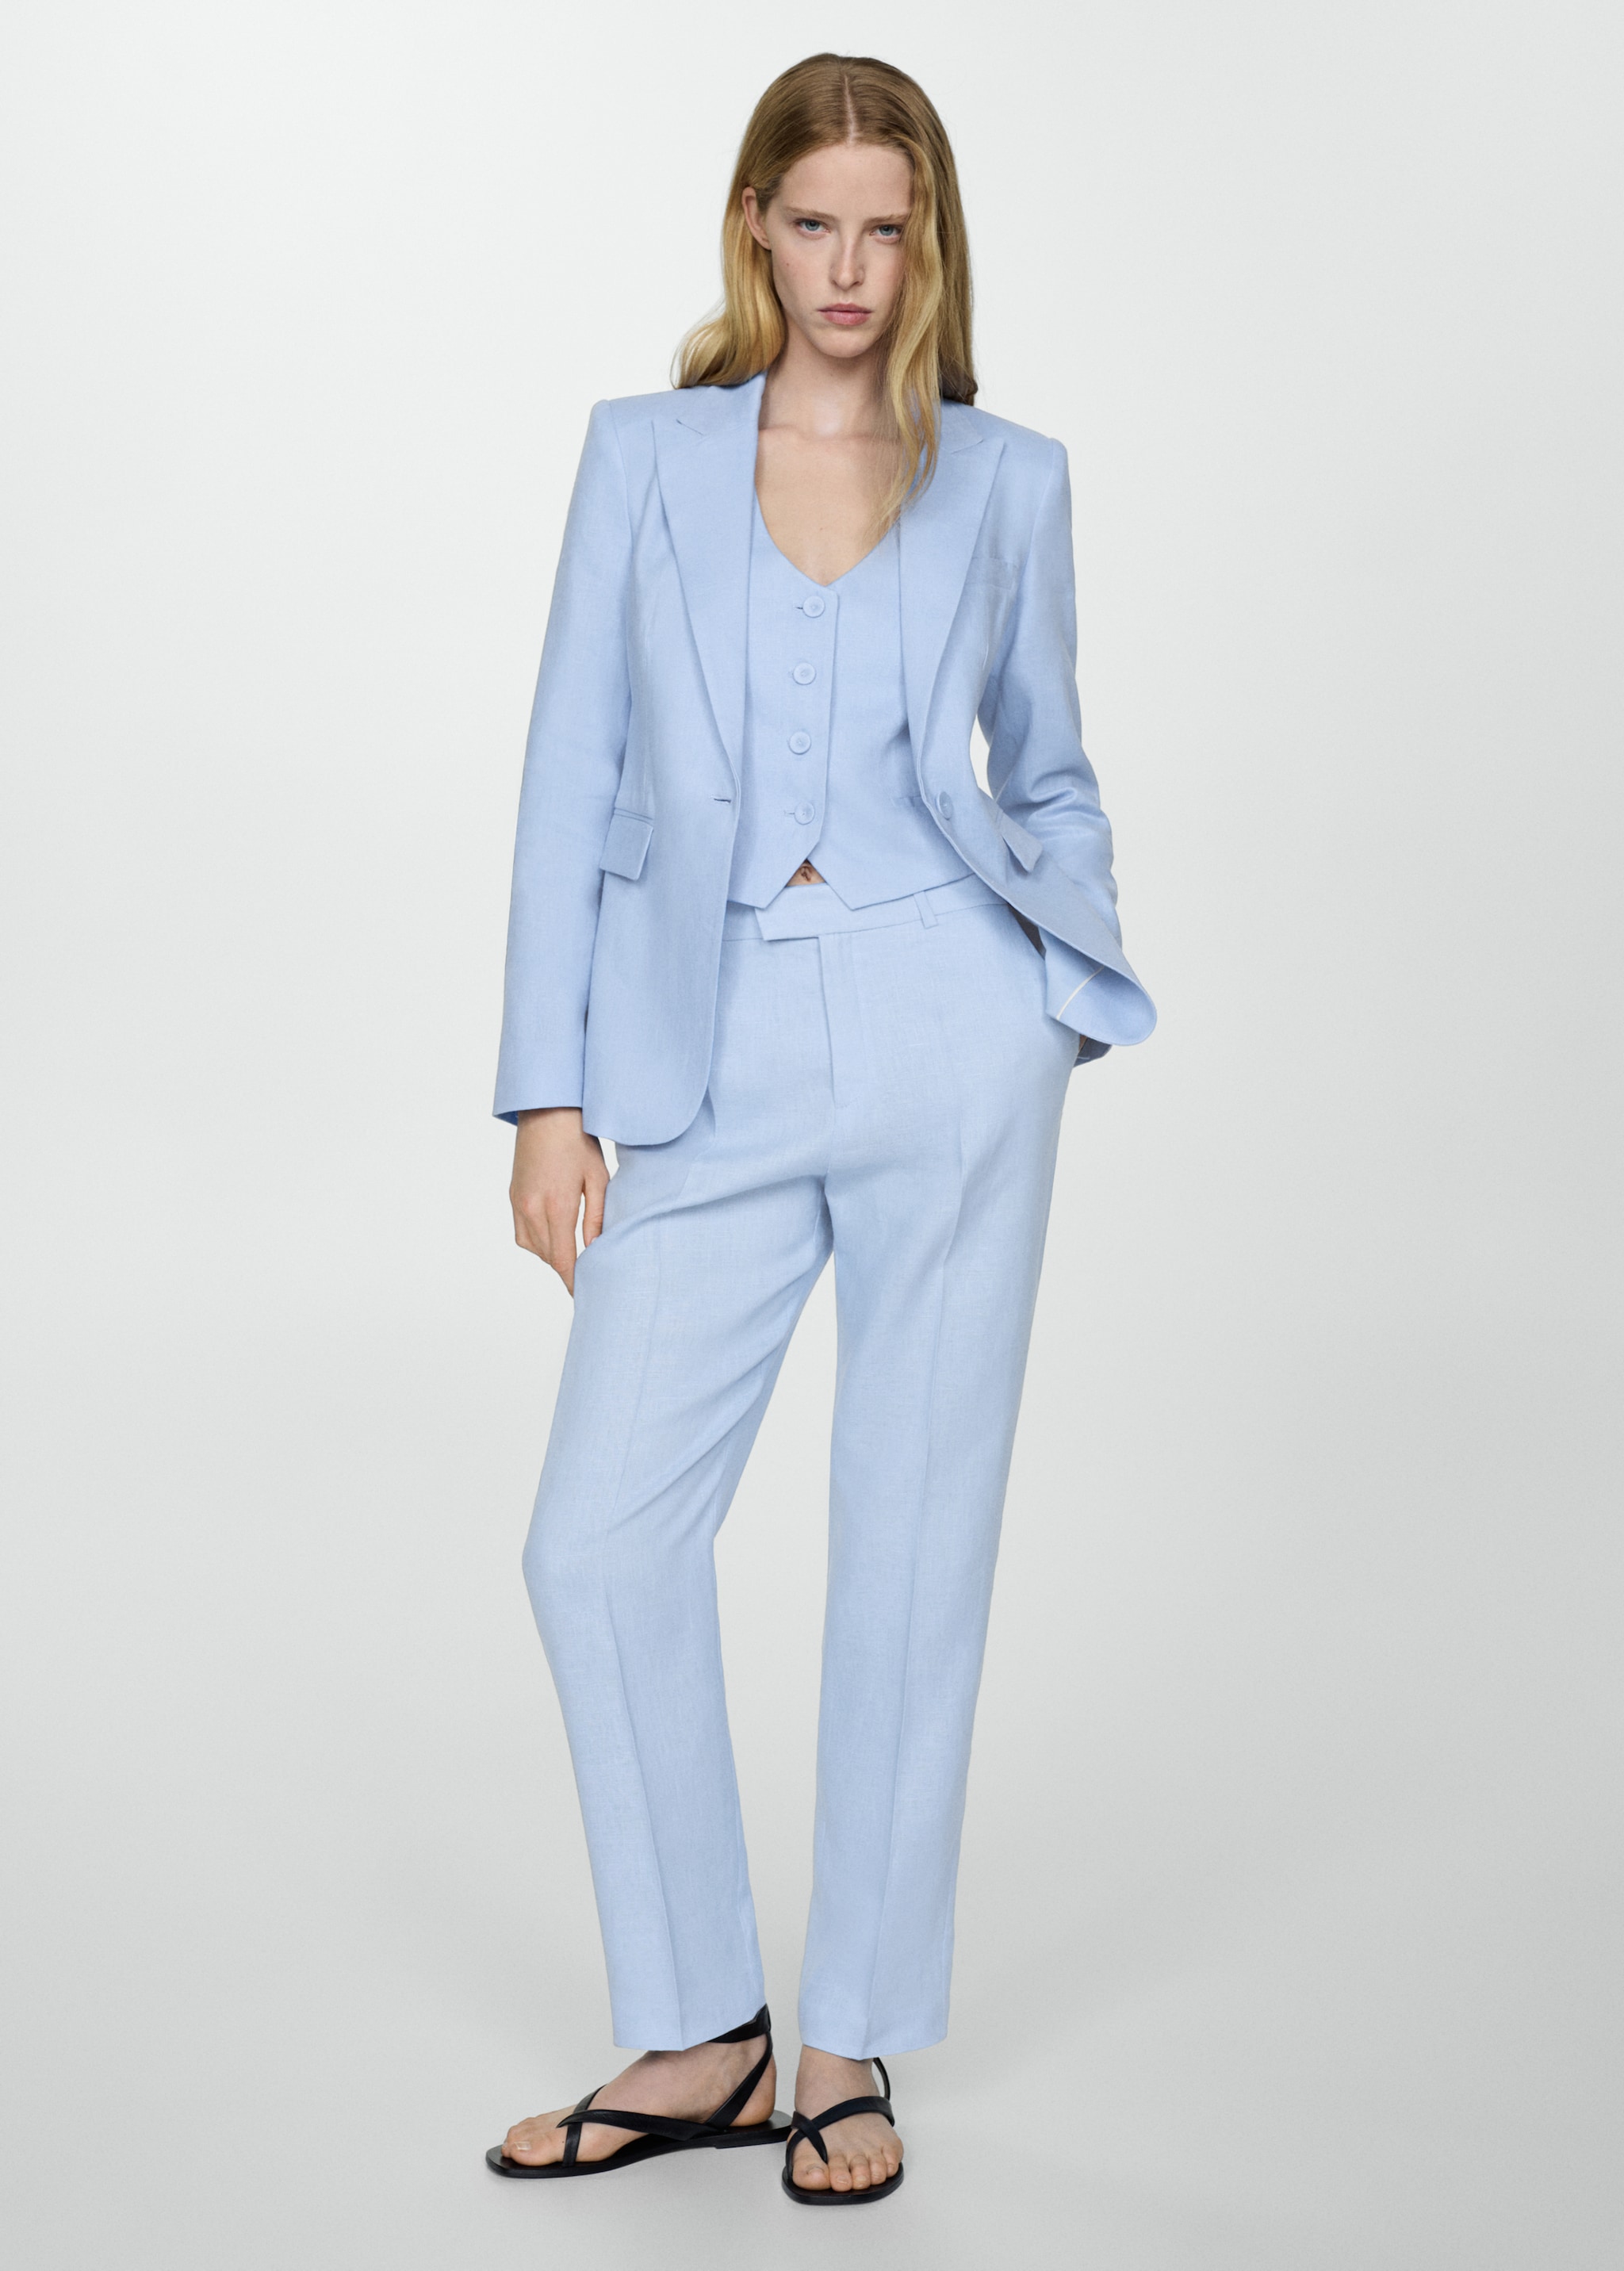 100% linen suit trousers - General plane